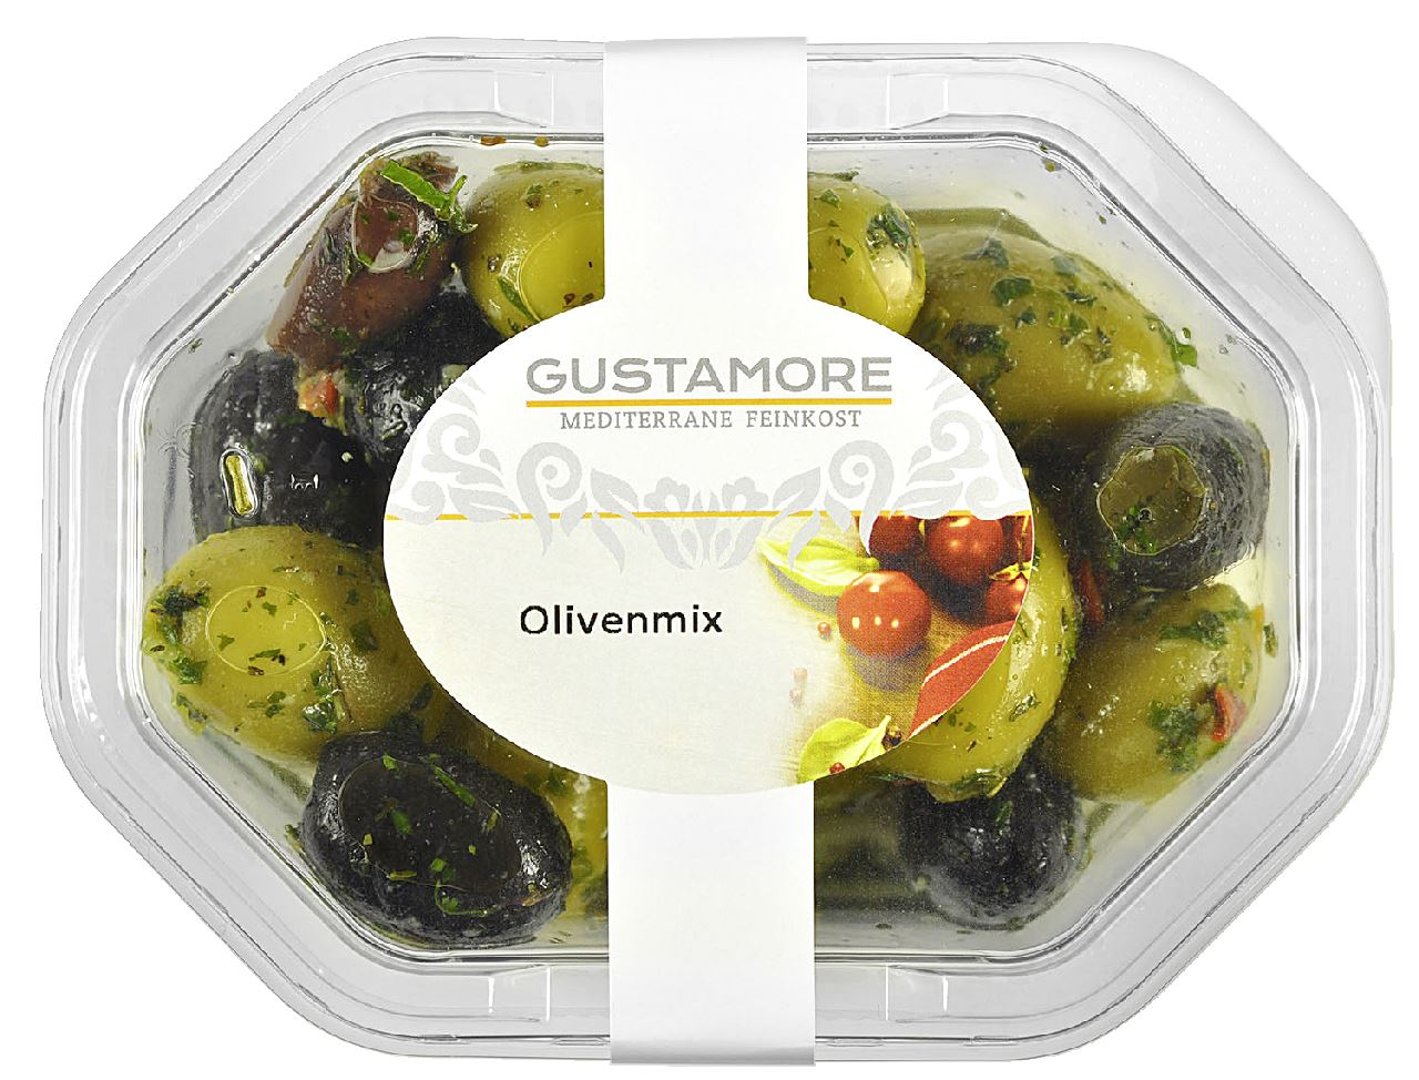 Gustamore - Olivenmix 5-fach sortiert in Öl, grüne und geschwärzte Oliven ohne Stein und grüne Oliven, gefüllt mit Paprika, Knoblauch oder Mandeln - 1 x 160 g Packung